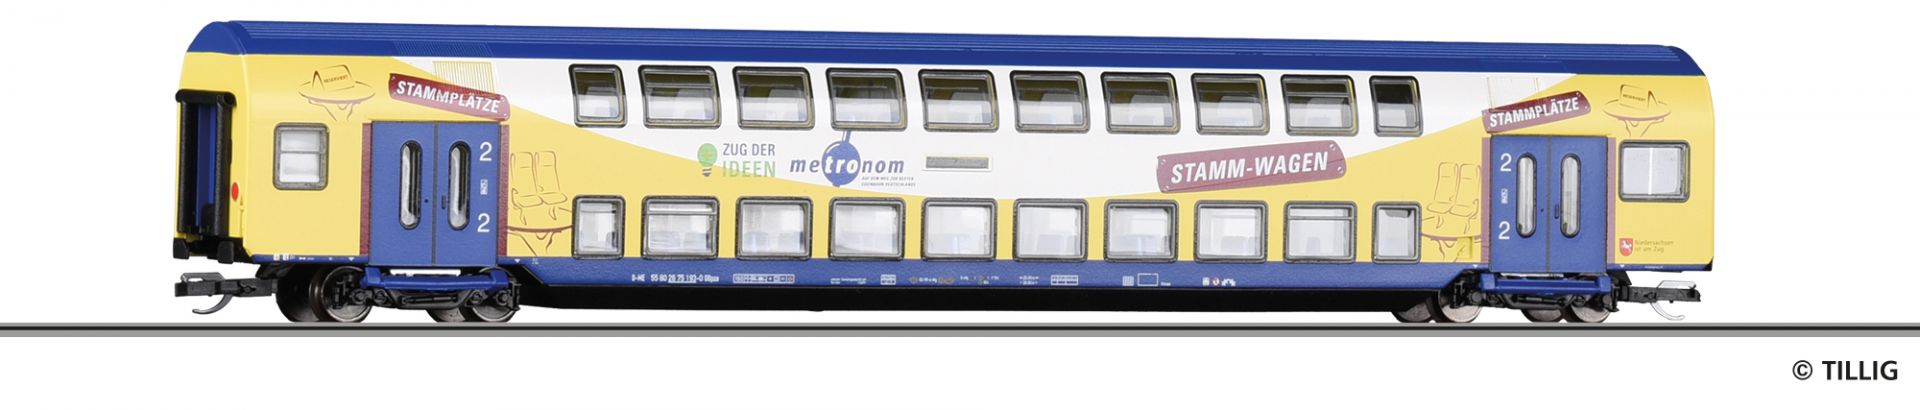 16795 | Doppelstockwagen metronom Eisenbahngesellschaft mbH